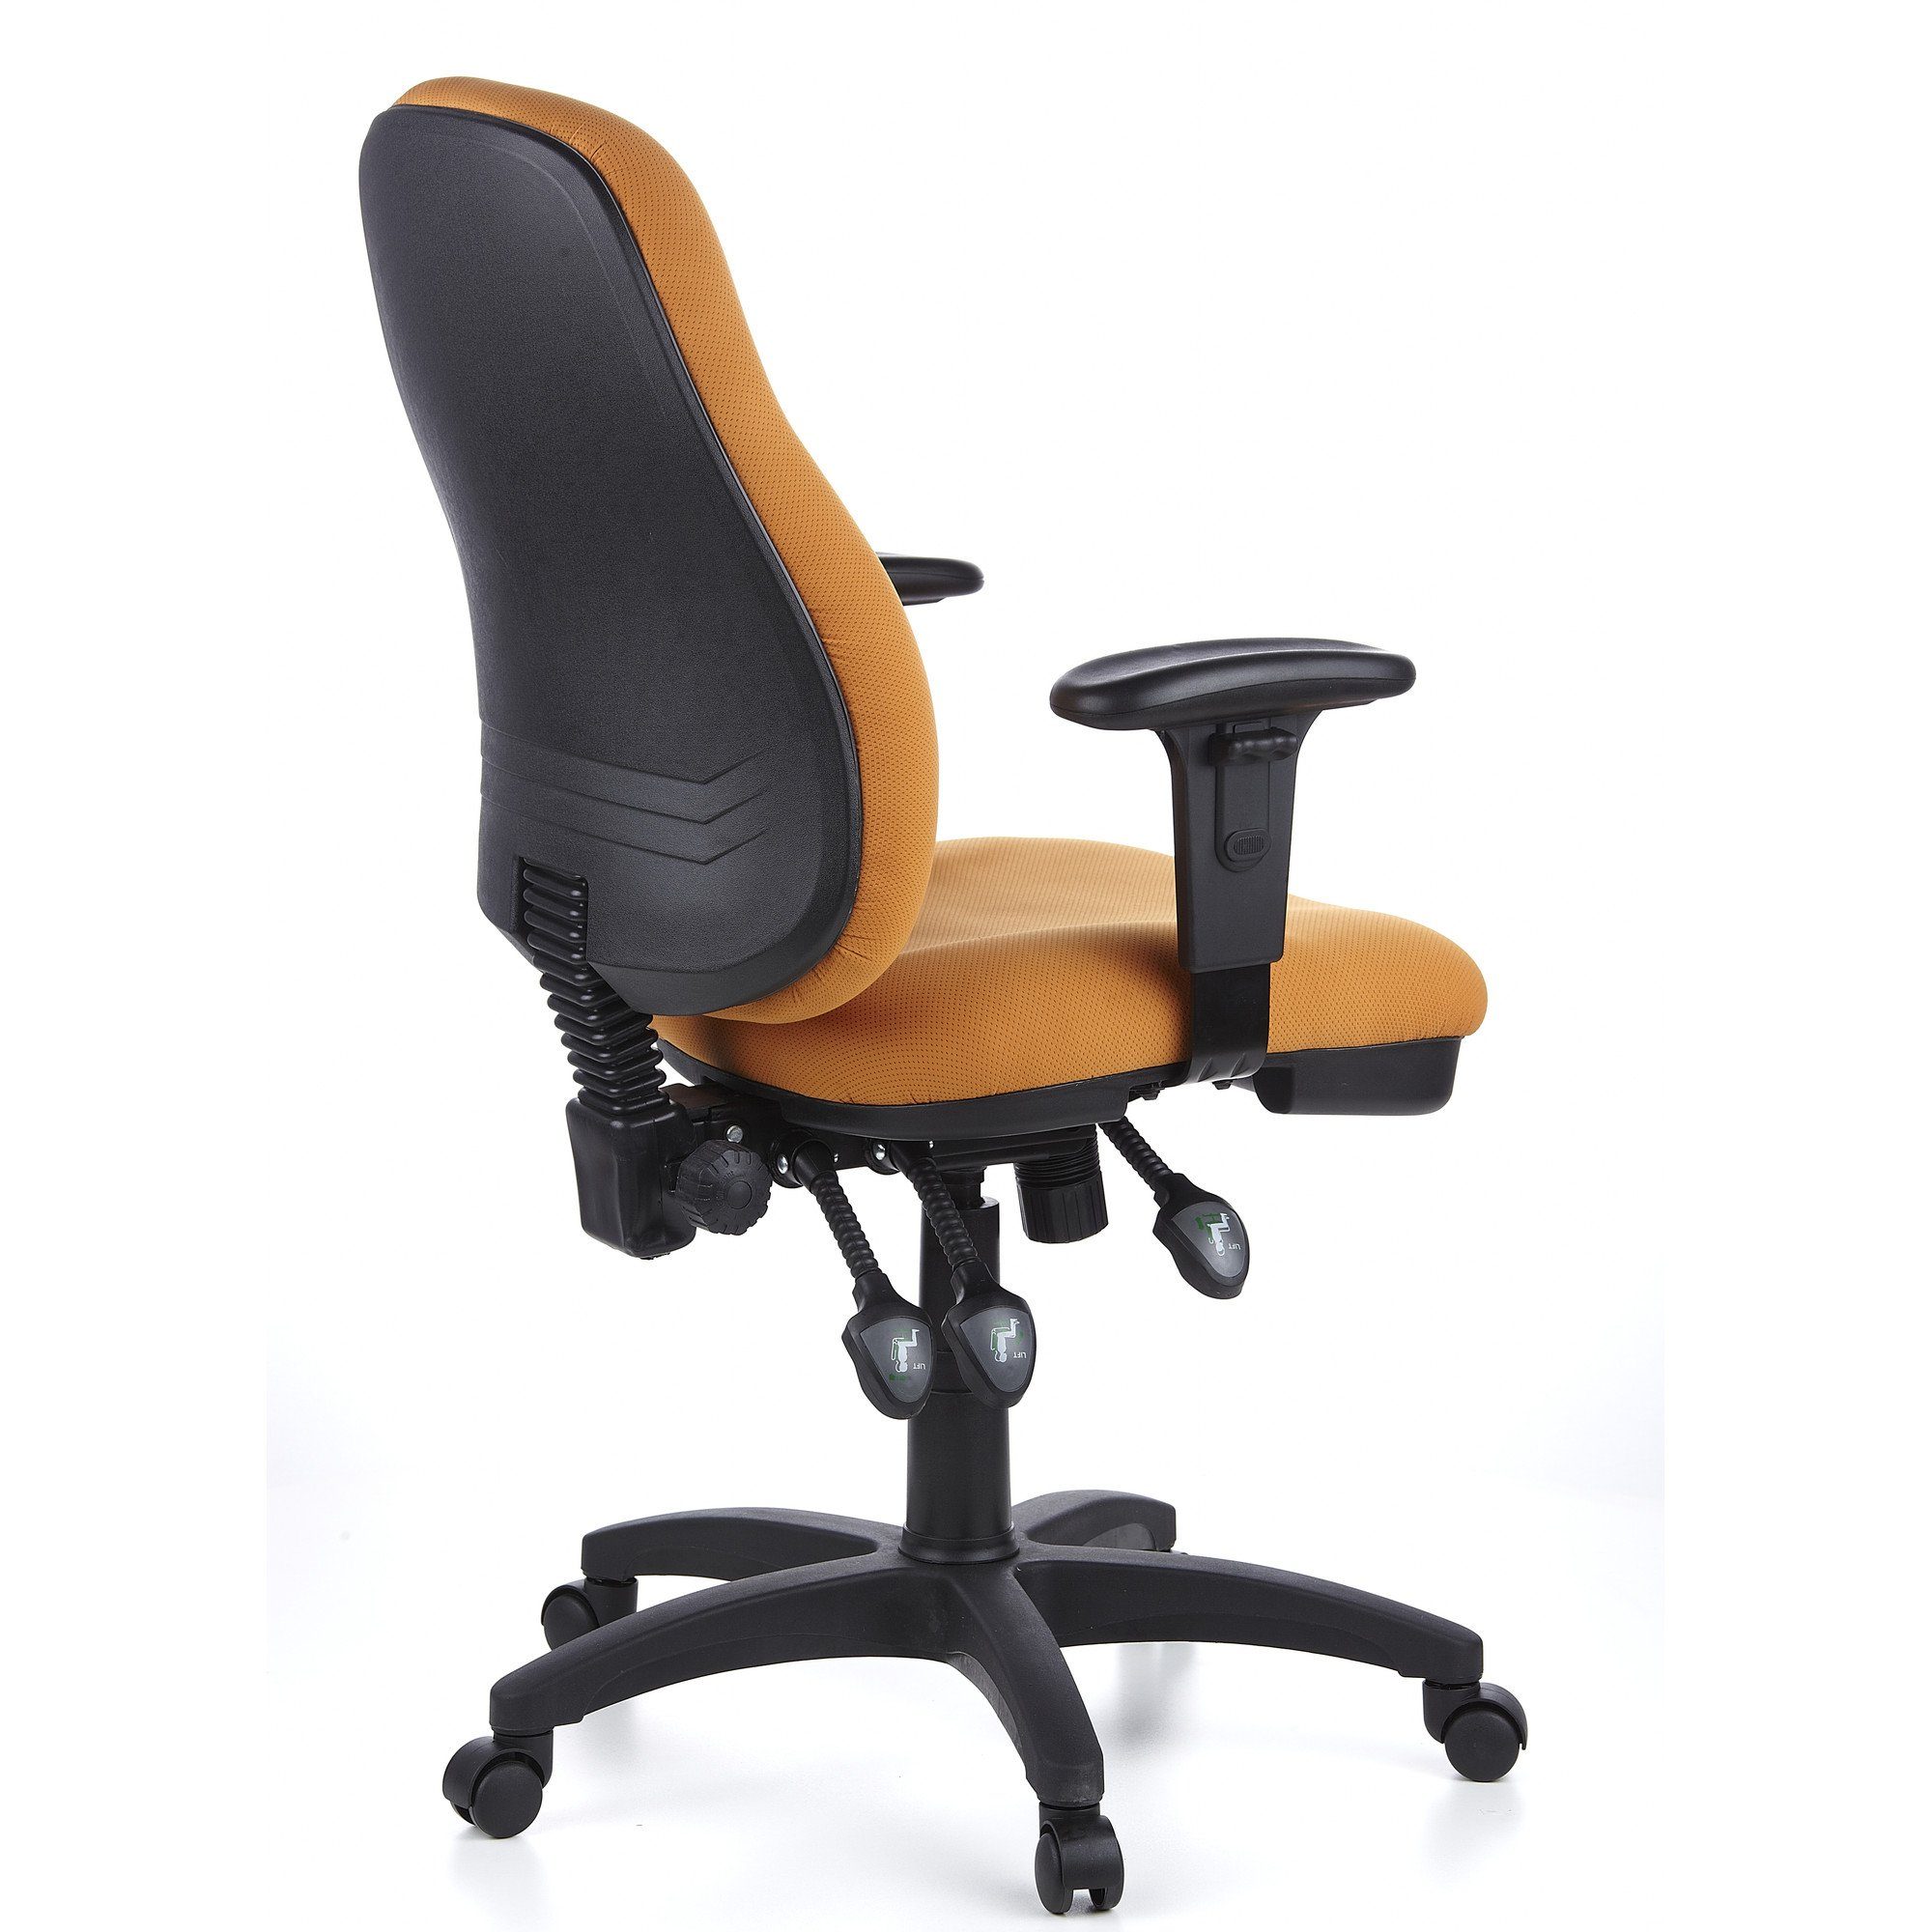 Orange Profi ZENIT ergonomisch hjh Stoff Bürostuhl Schreibtischstuhl (1 St), OFFICE PRO Drehstuhl